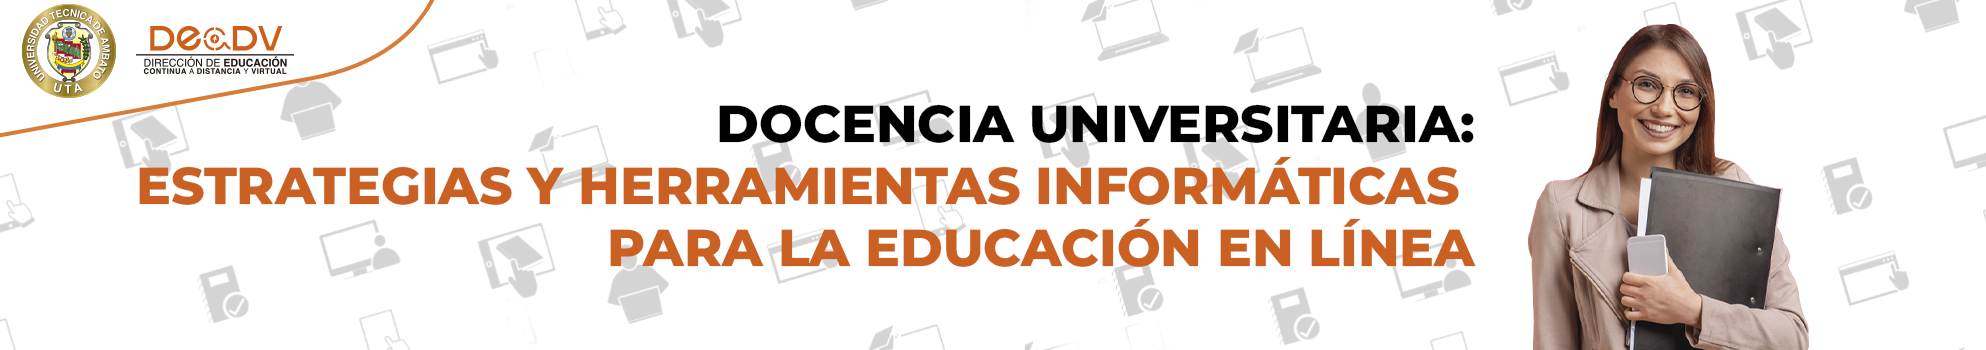 DOCENCIA UNIVERSITARIA: ESTRATEGIAS Y HERRAMIENTAS INFORMÁTICAS PARA LA EDUCACIÓN EN LÍNEA